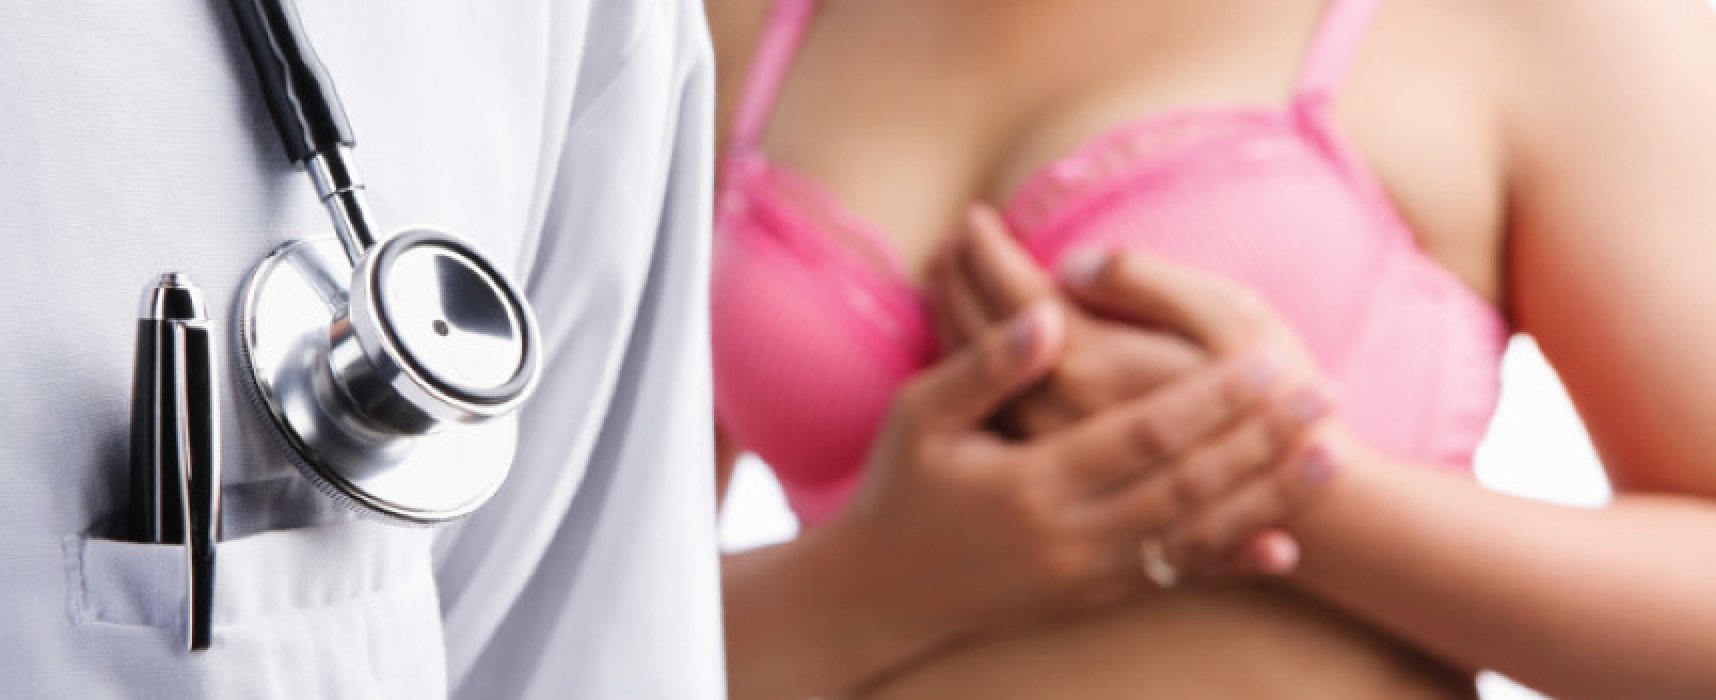 Tumori a Bisceglie, alta incidenza di quello alla prostata per gli uomini e alla mammella per le donne / DATI